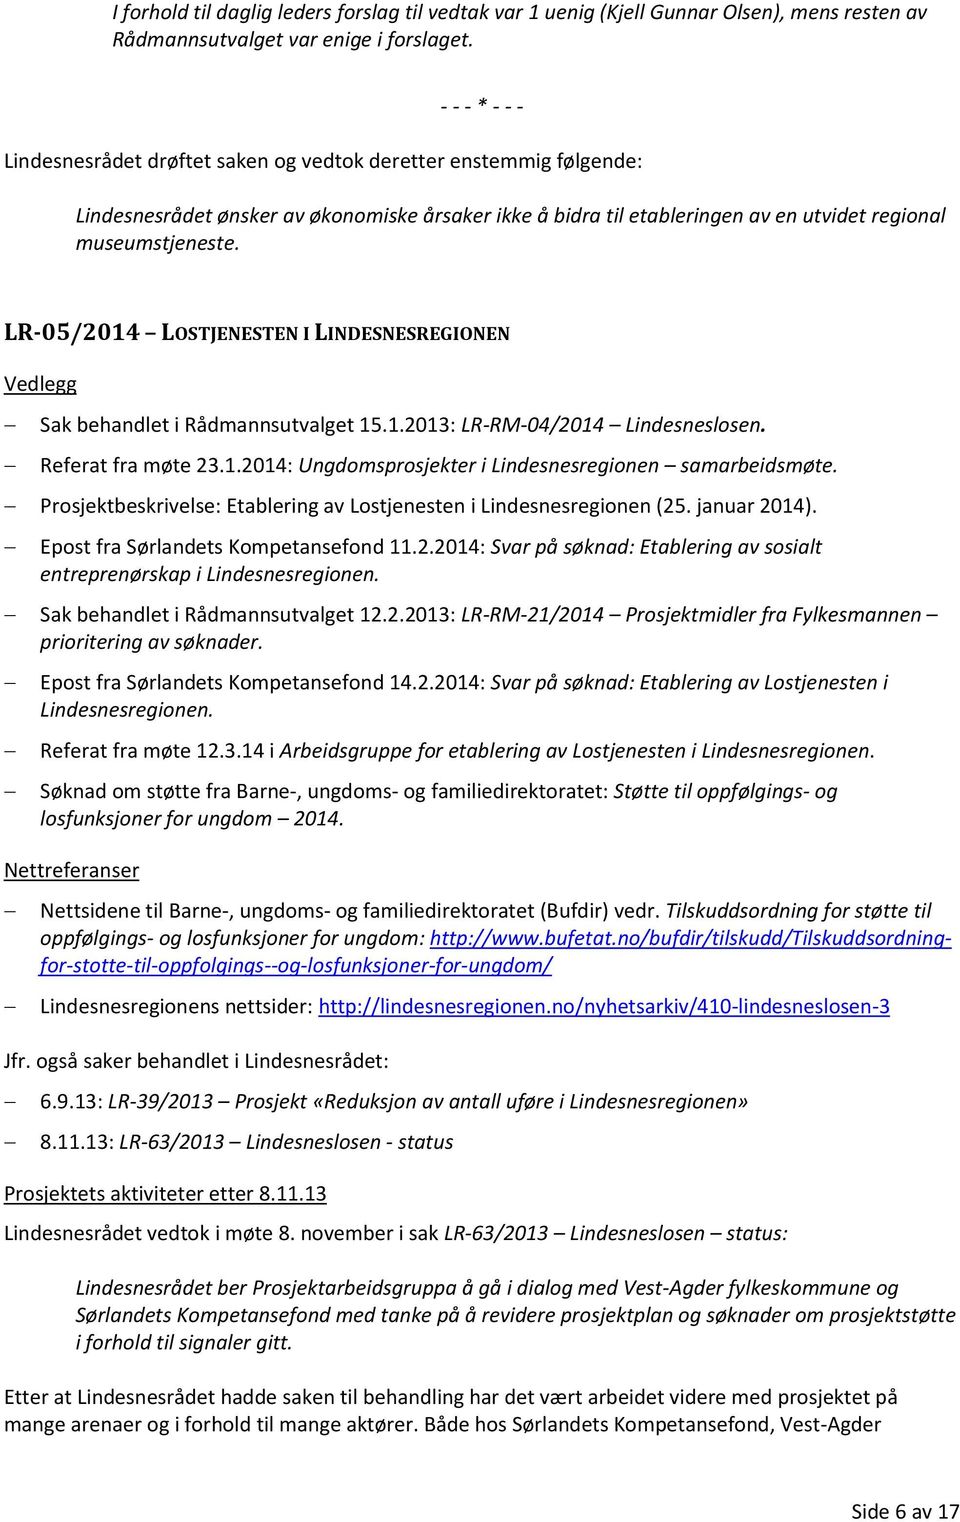 LR-05/2014 LOSTJENESTEN I LINDESNESREGIONEN Sak behandlet i Rådmannsutvalget 15.1.2013: LR-RM-04/2014 Lindesneslosen. Referat fra møte 23.1.2014: Ungdomsprosjekter i Lindesnesregionen samarbeidsmøte.